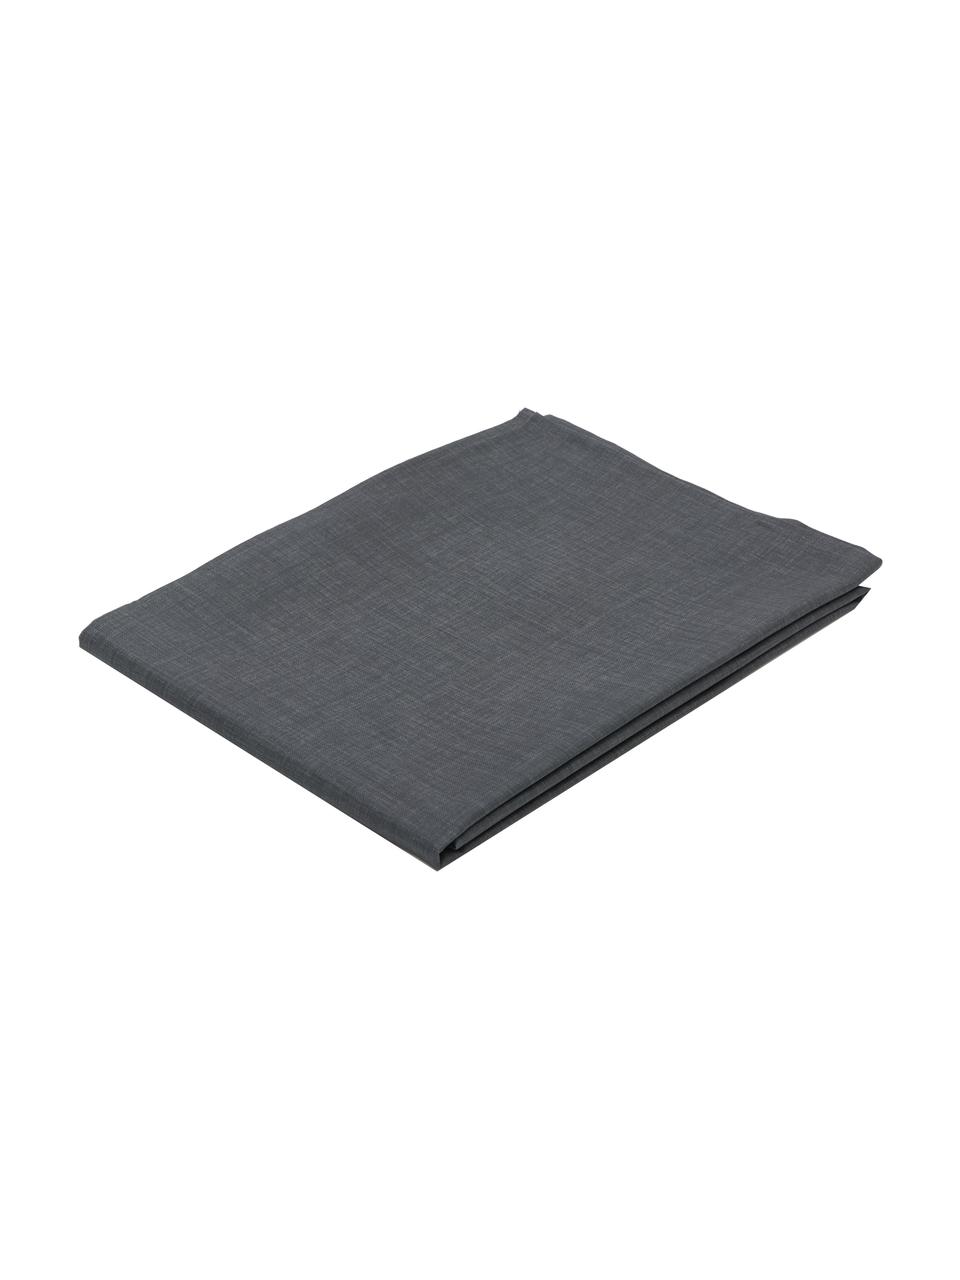 Mantel Alla antimanchas resinado, 50% algodón, 50% poliéster con revestimiento de resina, Negro, Para 2 comesales (An 140 x L 100 cm)